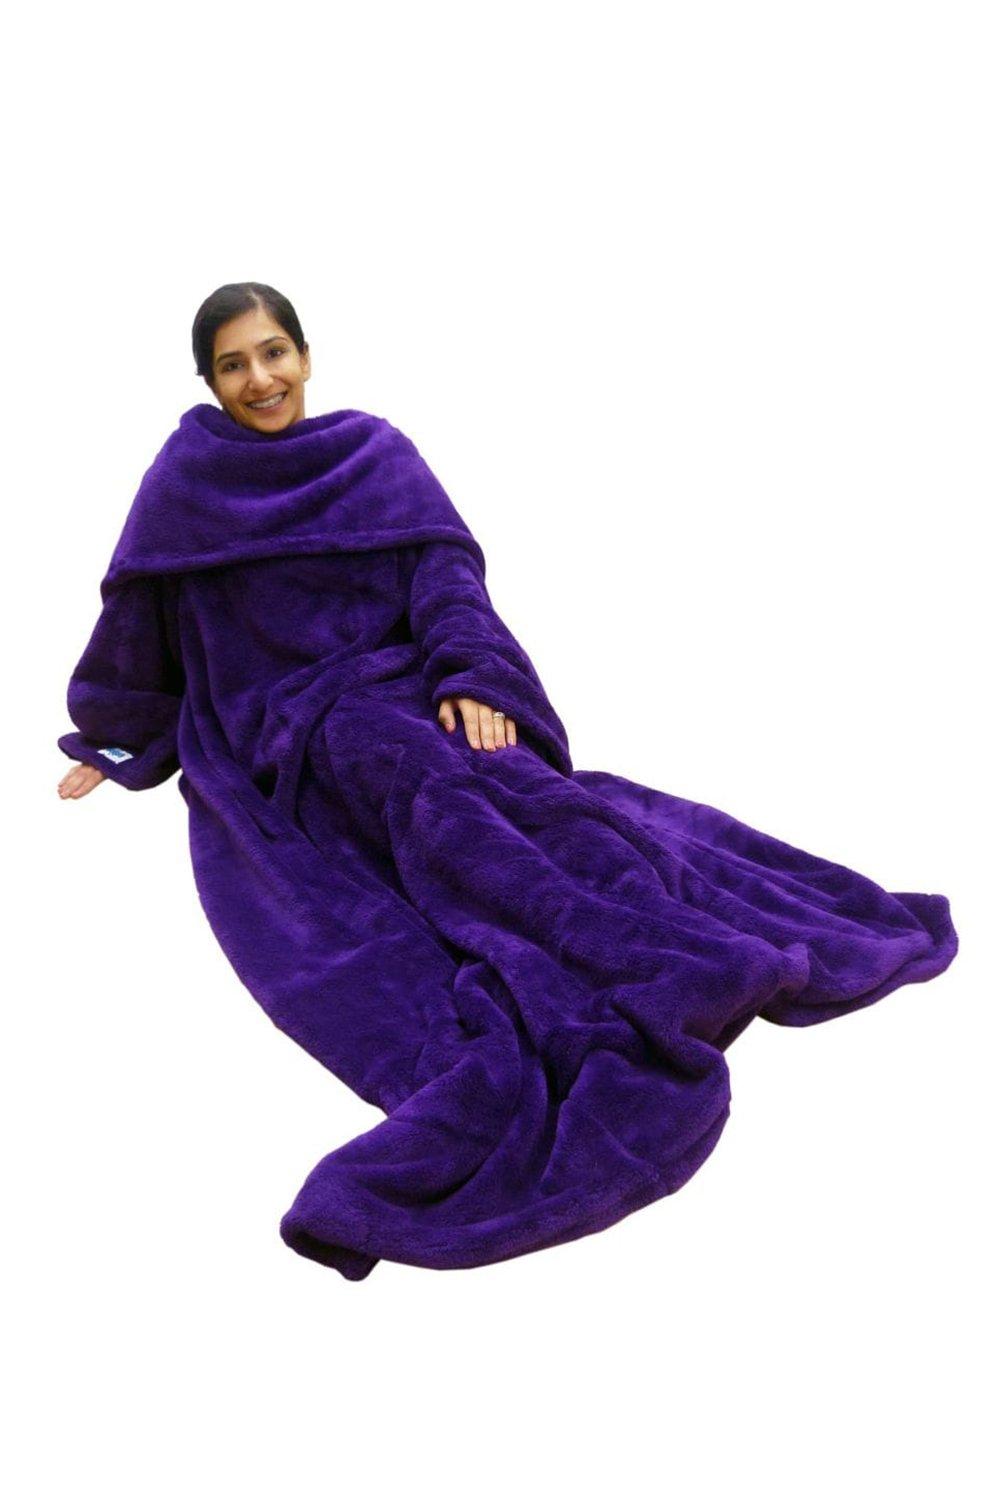 Ultimate Slanket - Purple